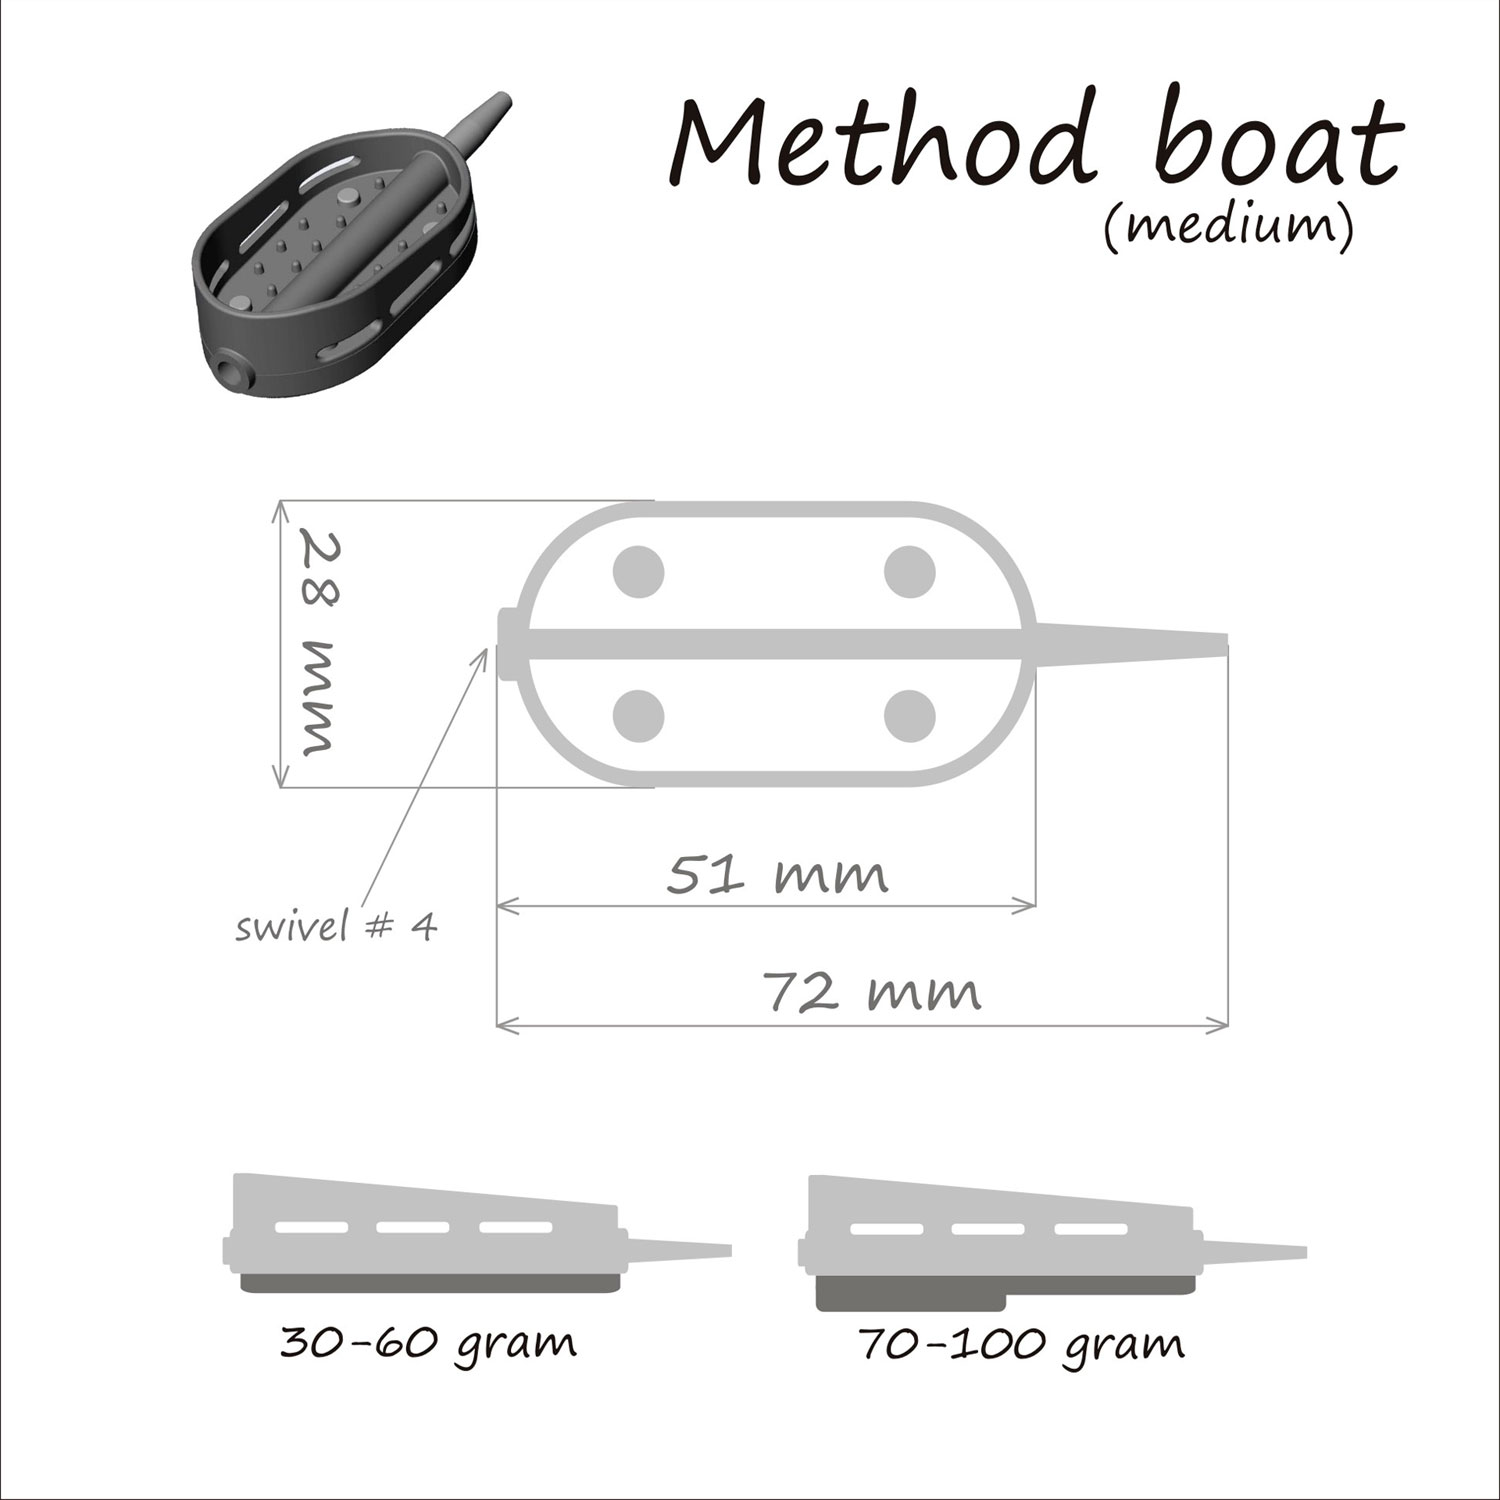 Кормушка ORANGE Boat Flat Method, 100 гр, в тех. уп. 10 шт